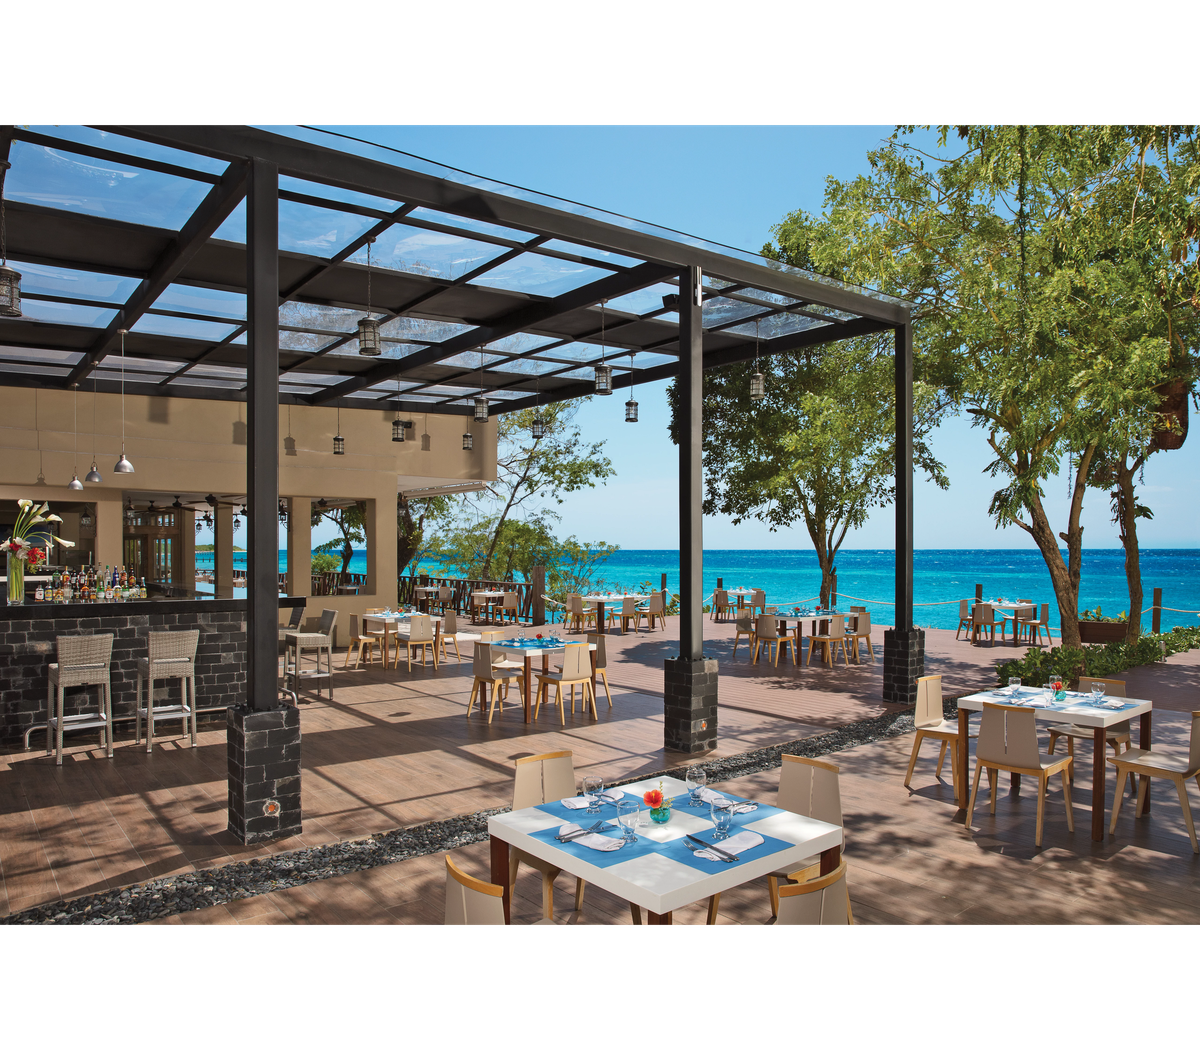 El nuevo hotel de AMR Collection, Dreams Cozumel Cape Resort & Spa, ofrece tres restaurantes gourmet a la carta, un bufé y tres bares, así como servicio a la habitación las 24 horas.